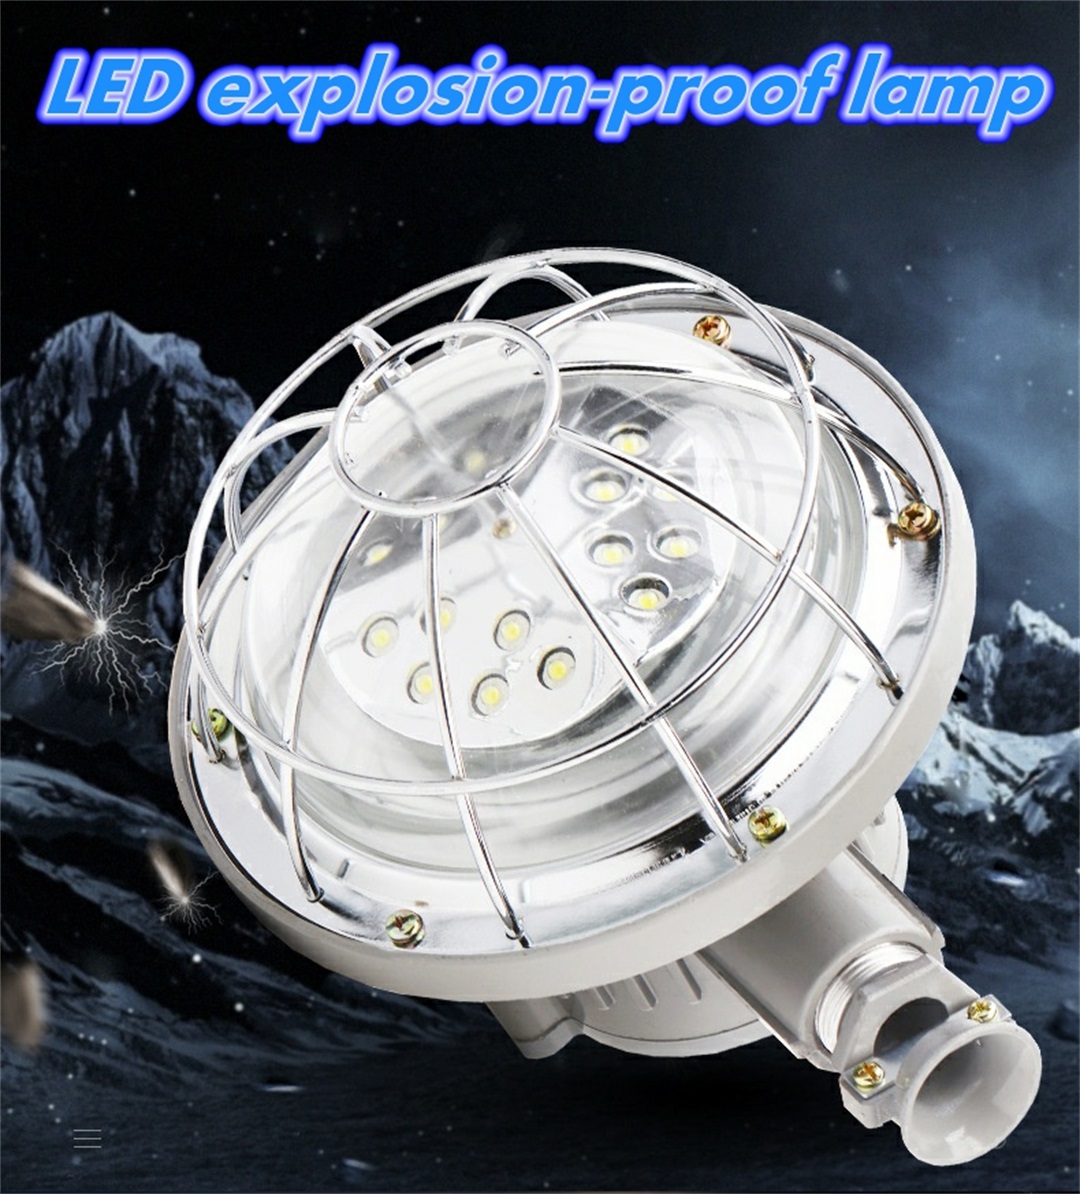 Mine explosion-proof lamp